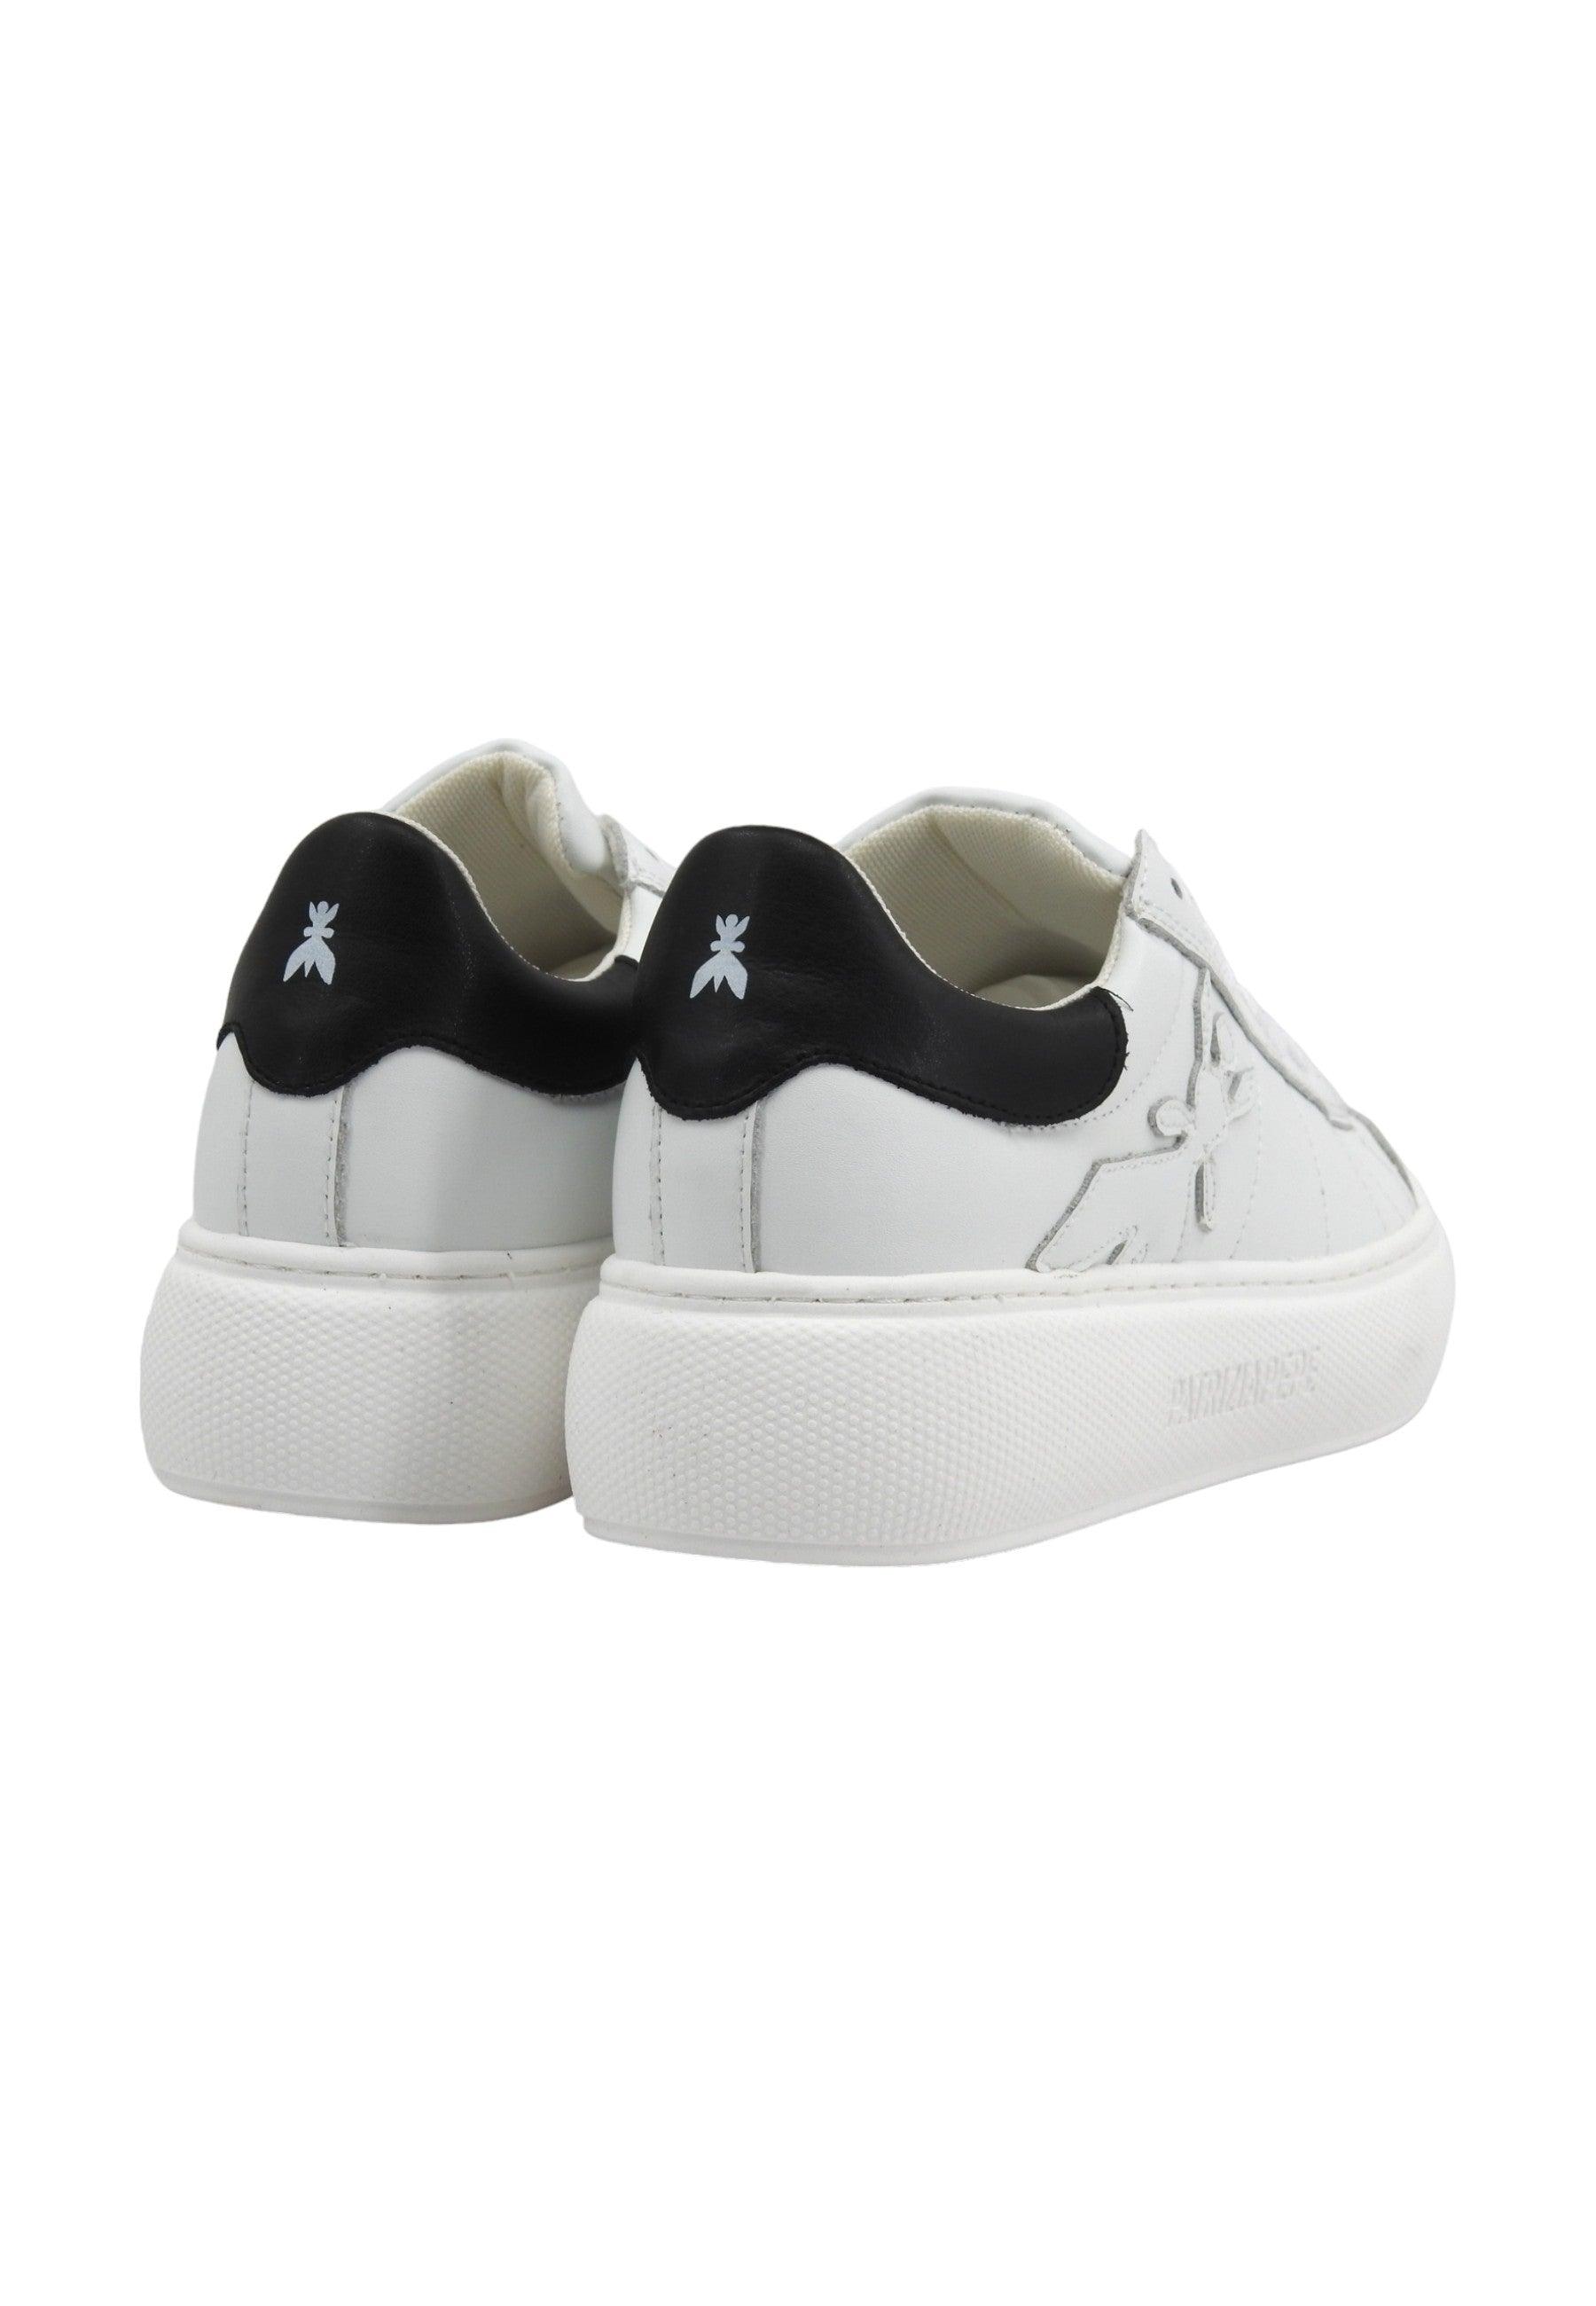 PATRIZIA PEPE Sneaker Donna White Black 8Z0080-E028 - Sandrini Calzature e Abbigliamento